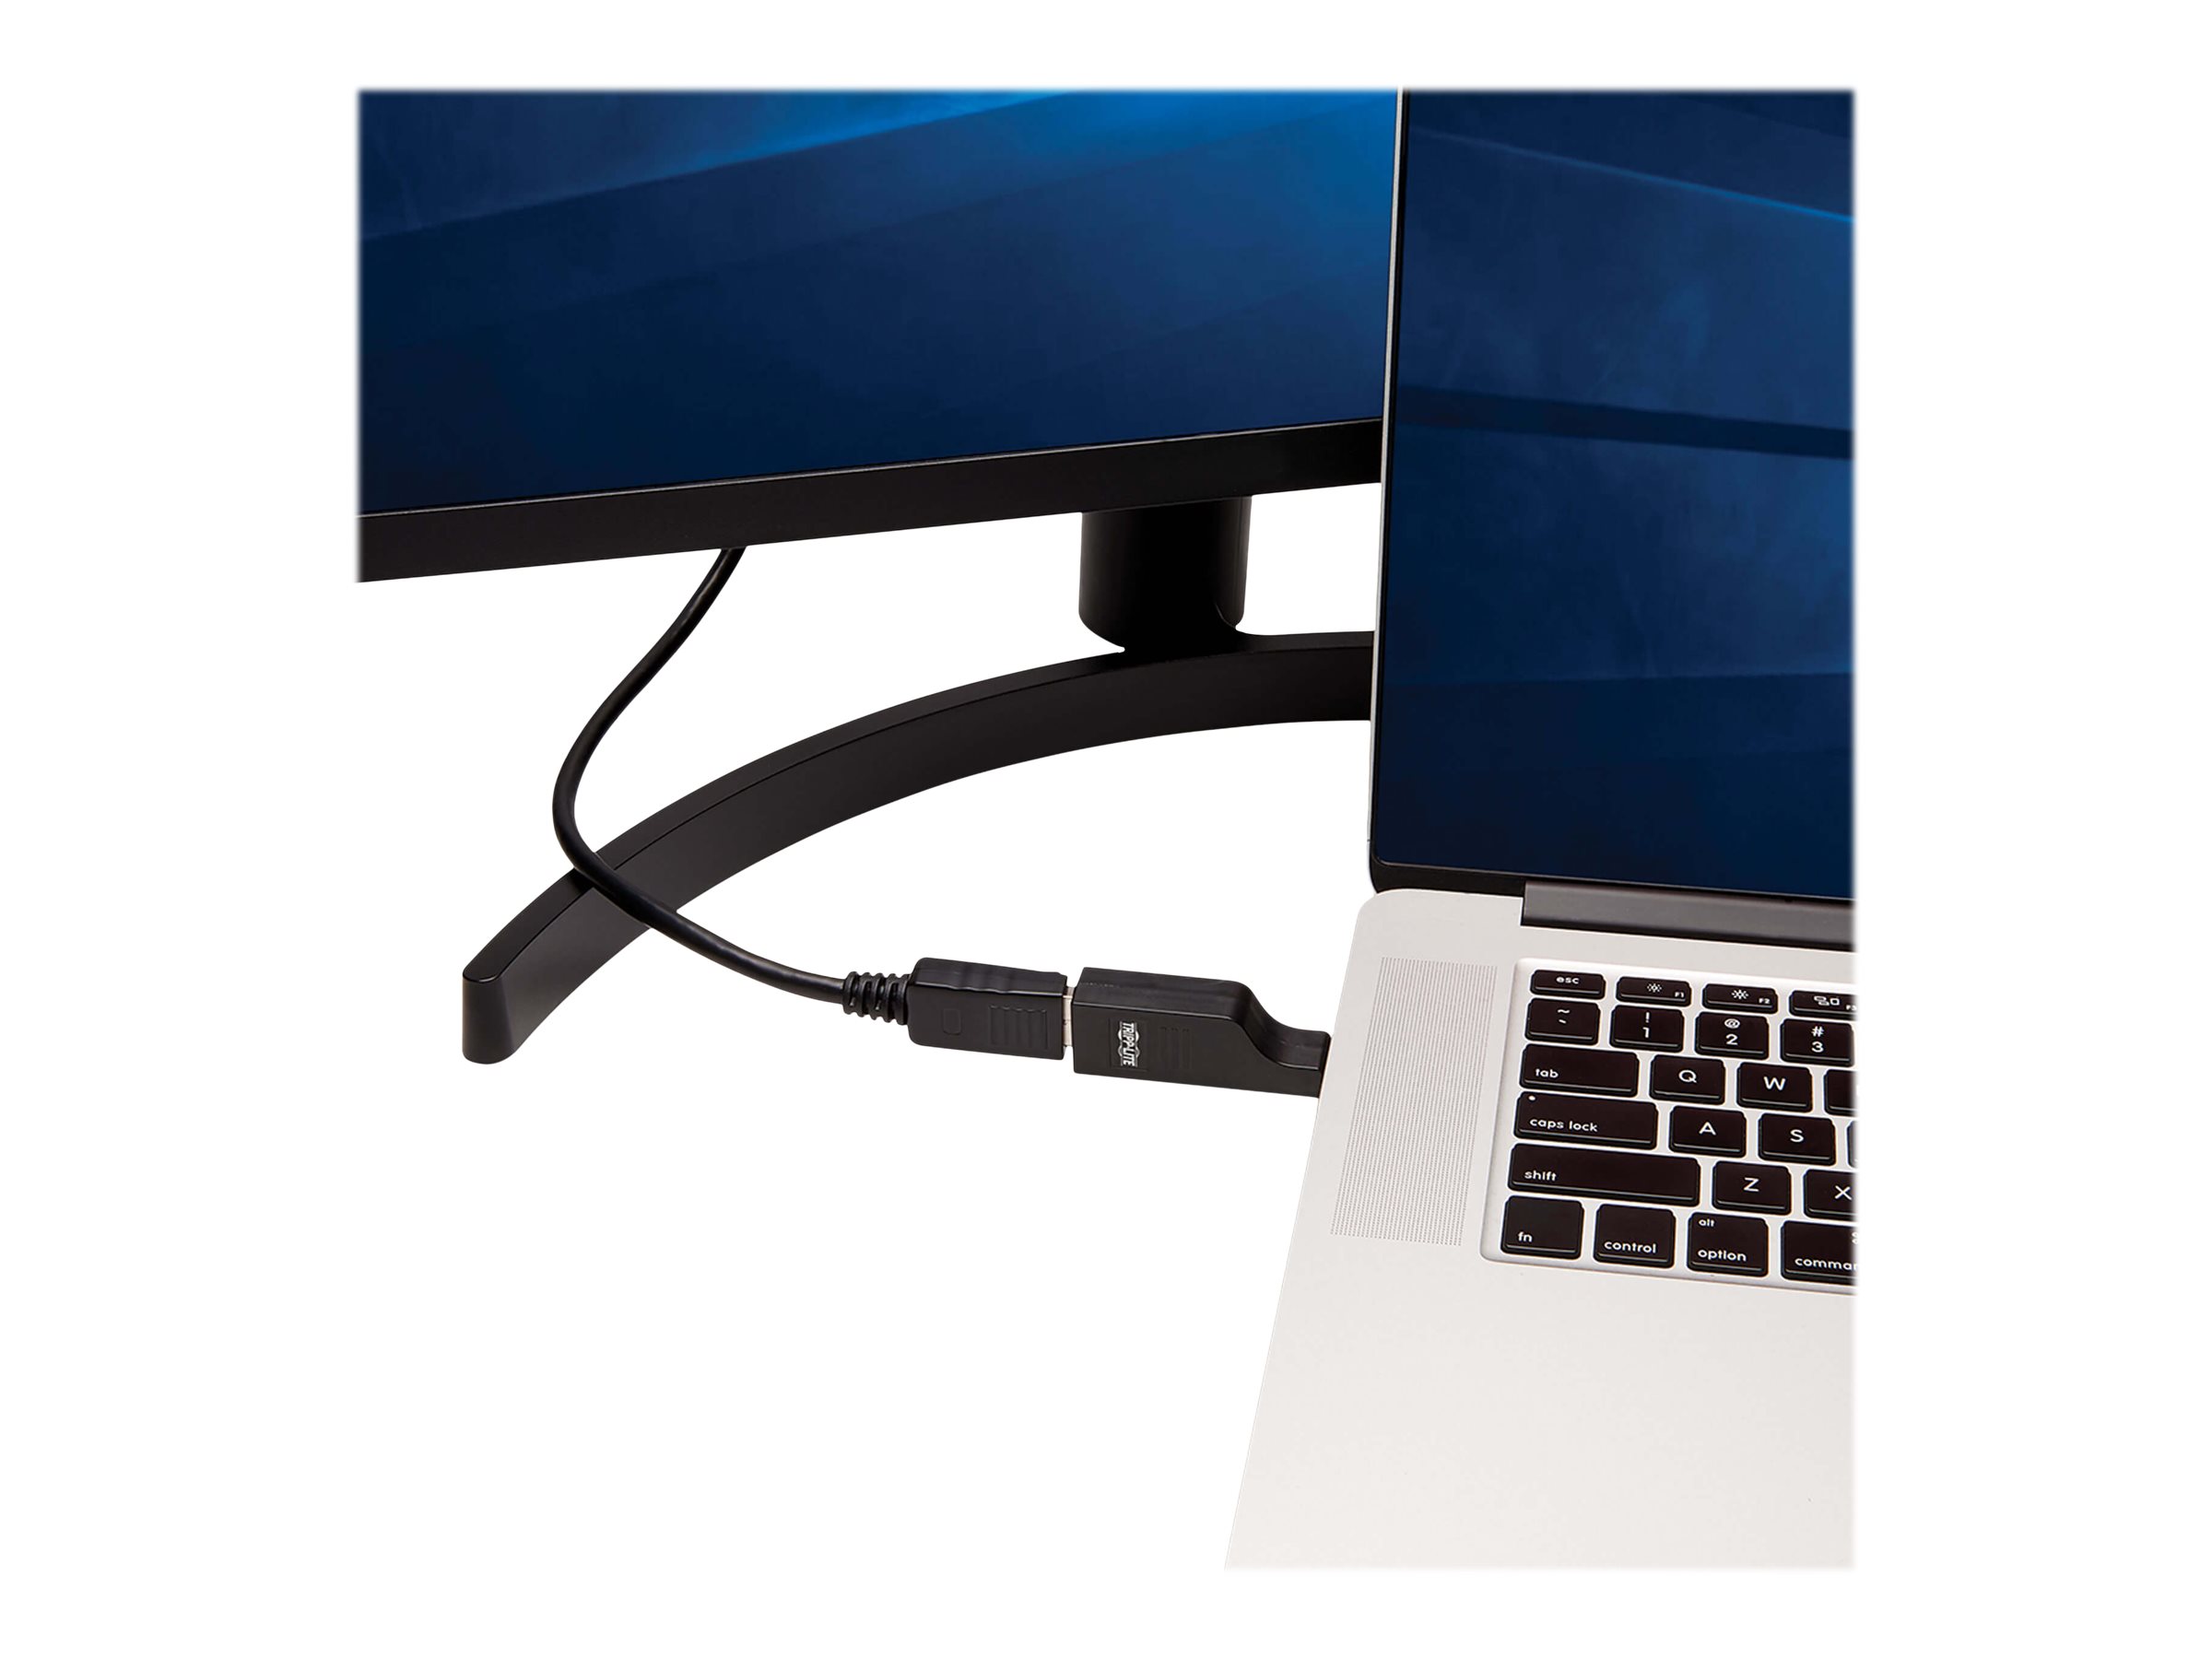 Tripp Lite USB C to DisplayPort Adapter Cable USB 3.1 Locking 4K